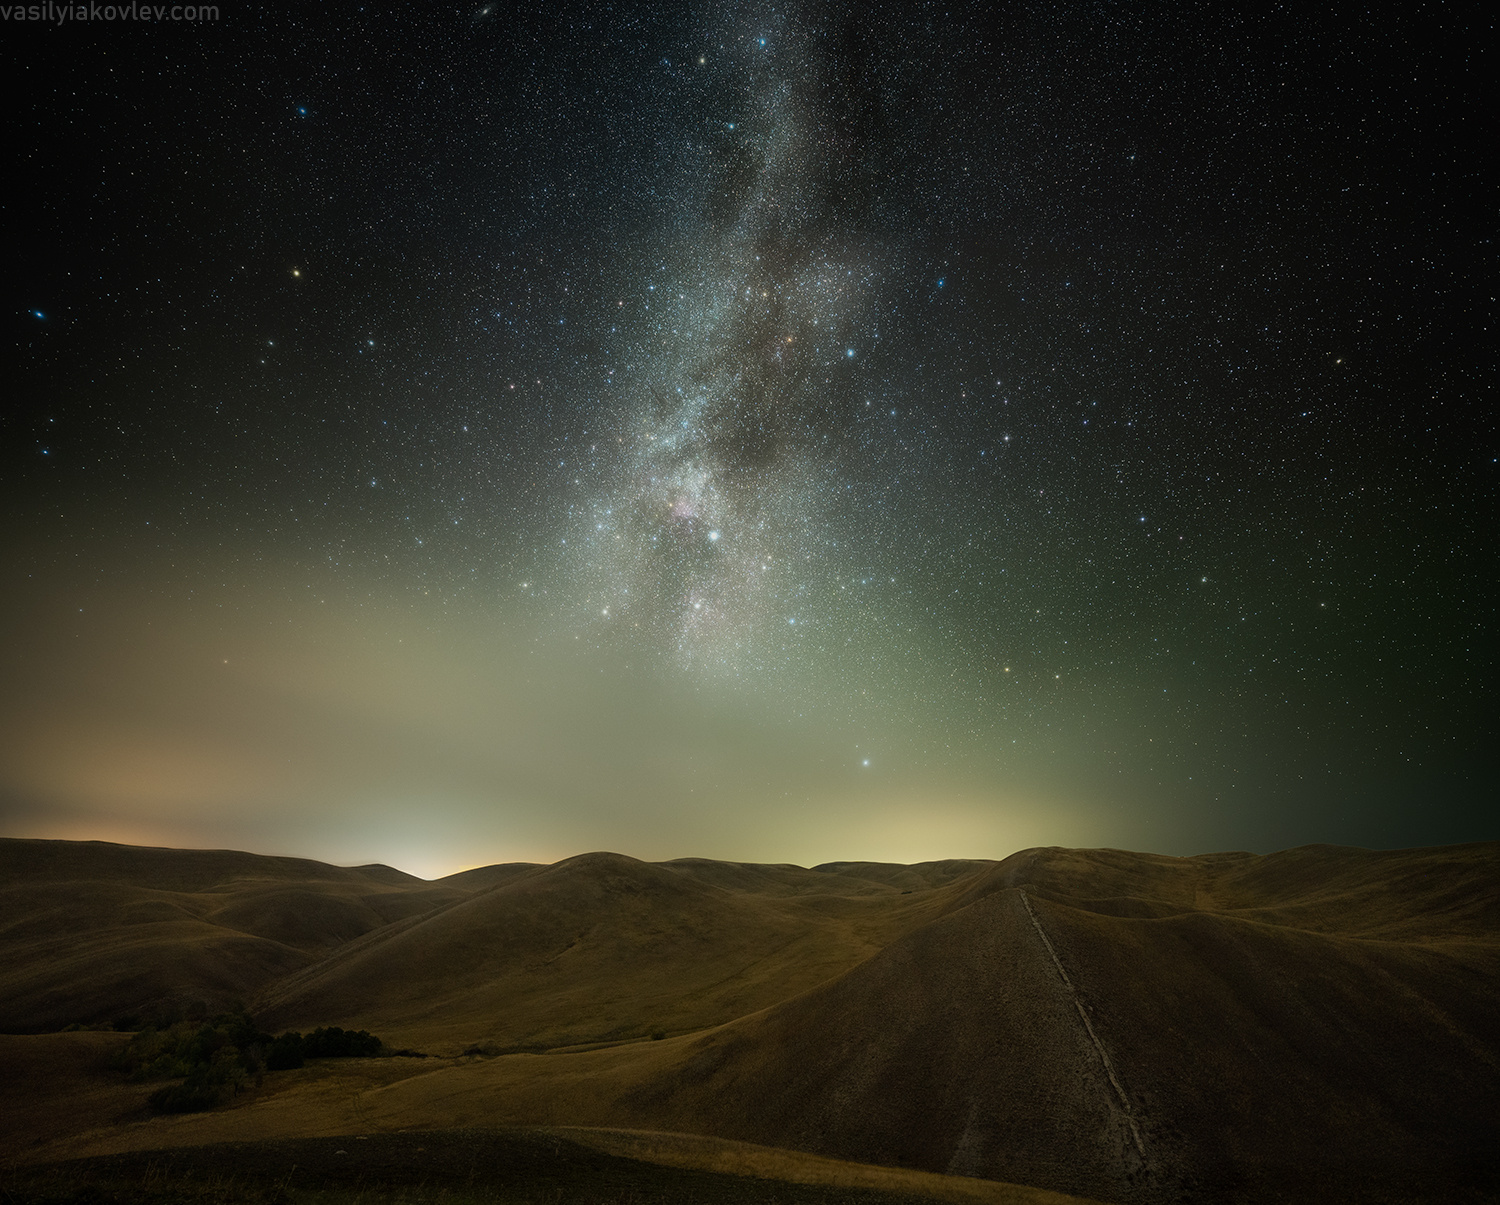 Звездная ночь в Долгих горах долгие горы фототур яковлевфототур василийяковлев